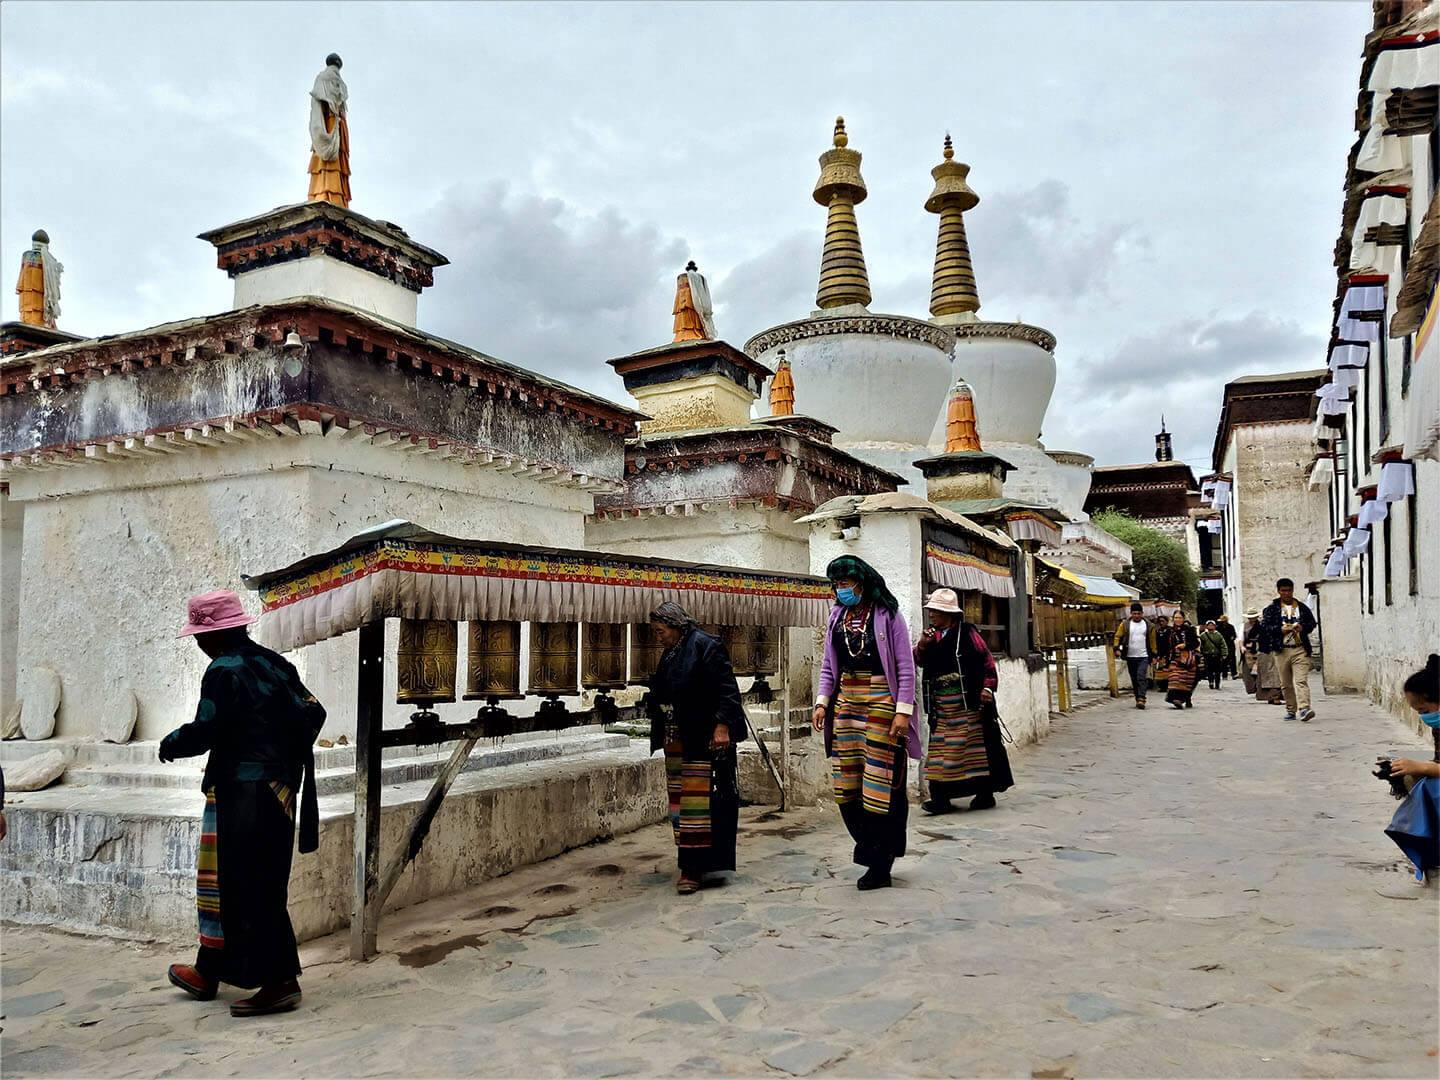 Shigaste Tashi Lhunpo monastery